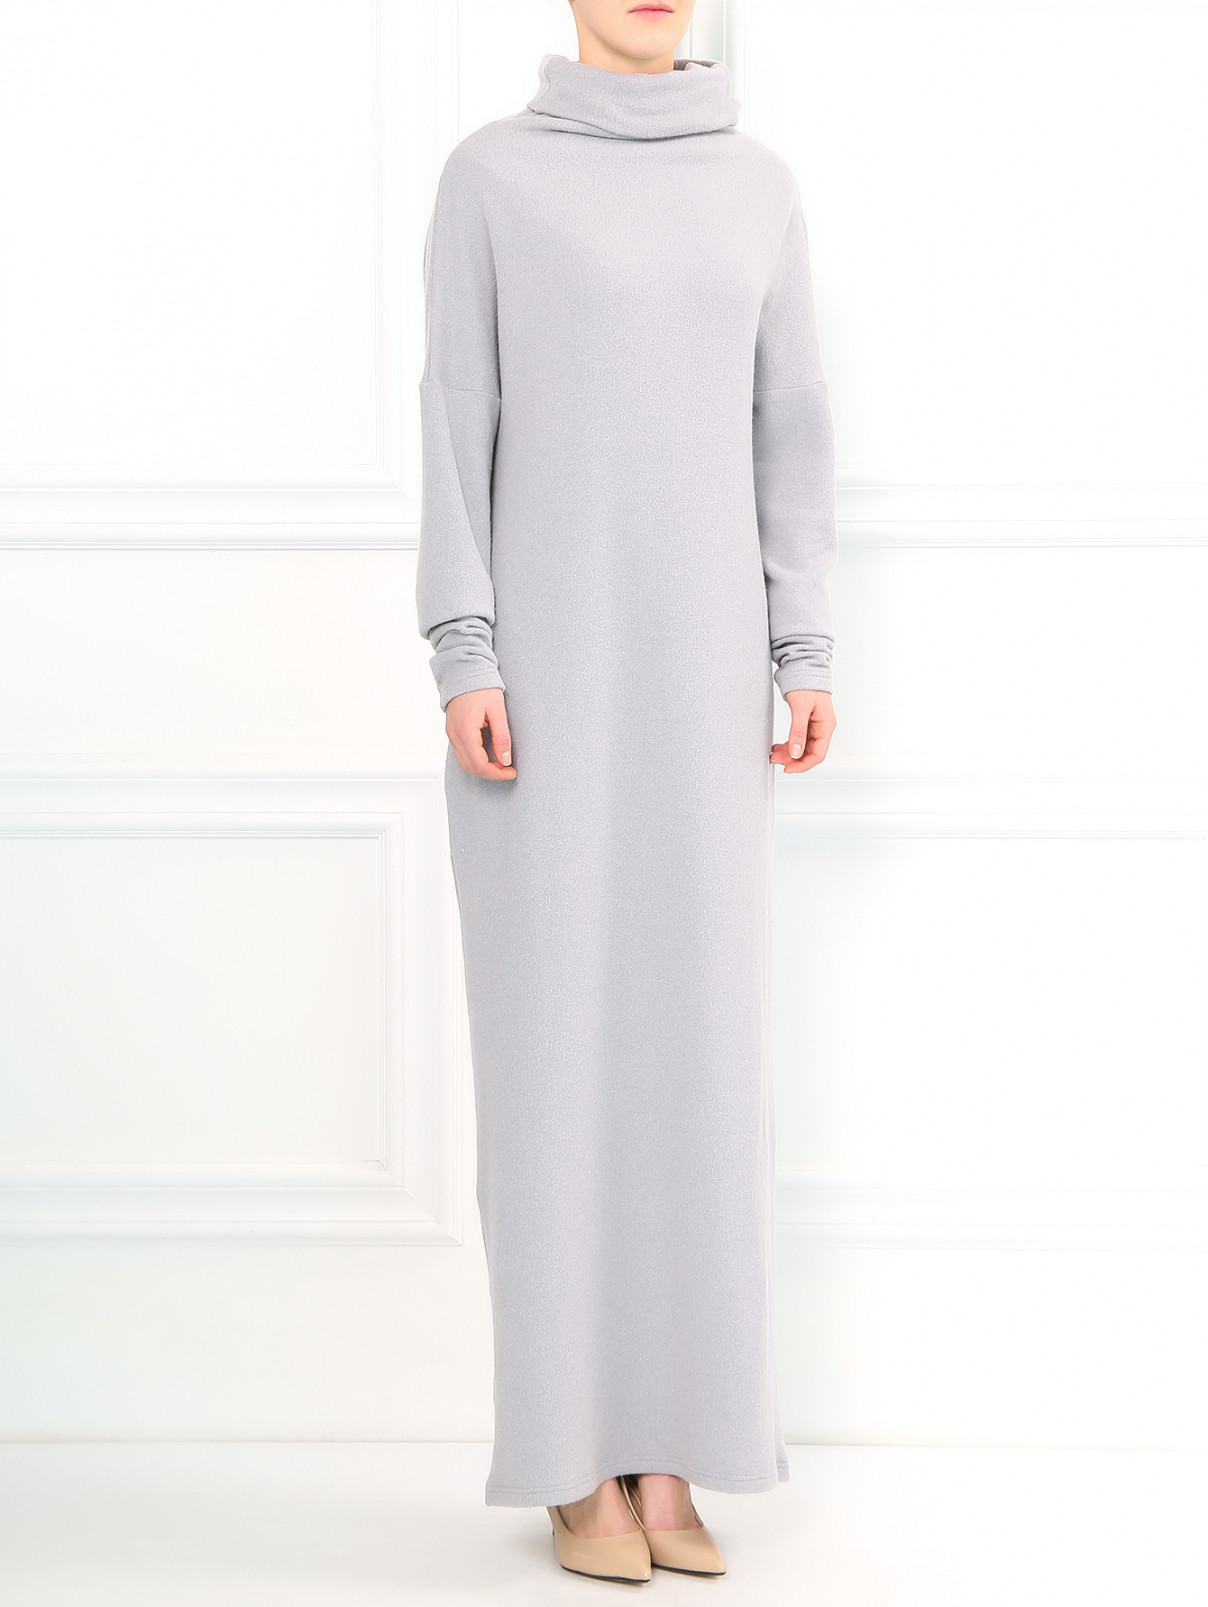 Трикотажное платье-макси из смешанной шерсти A La Russe  –  Модель Общий вид  – Цвет:  Серый